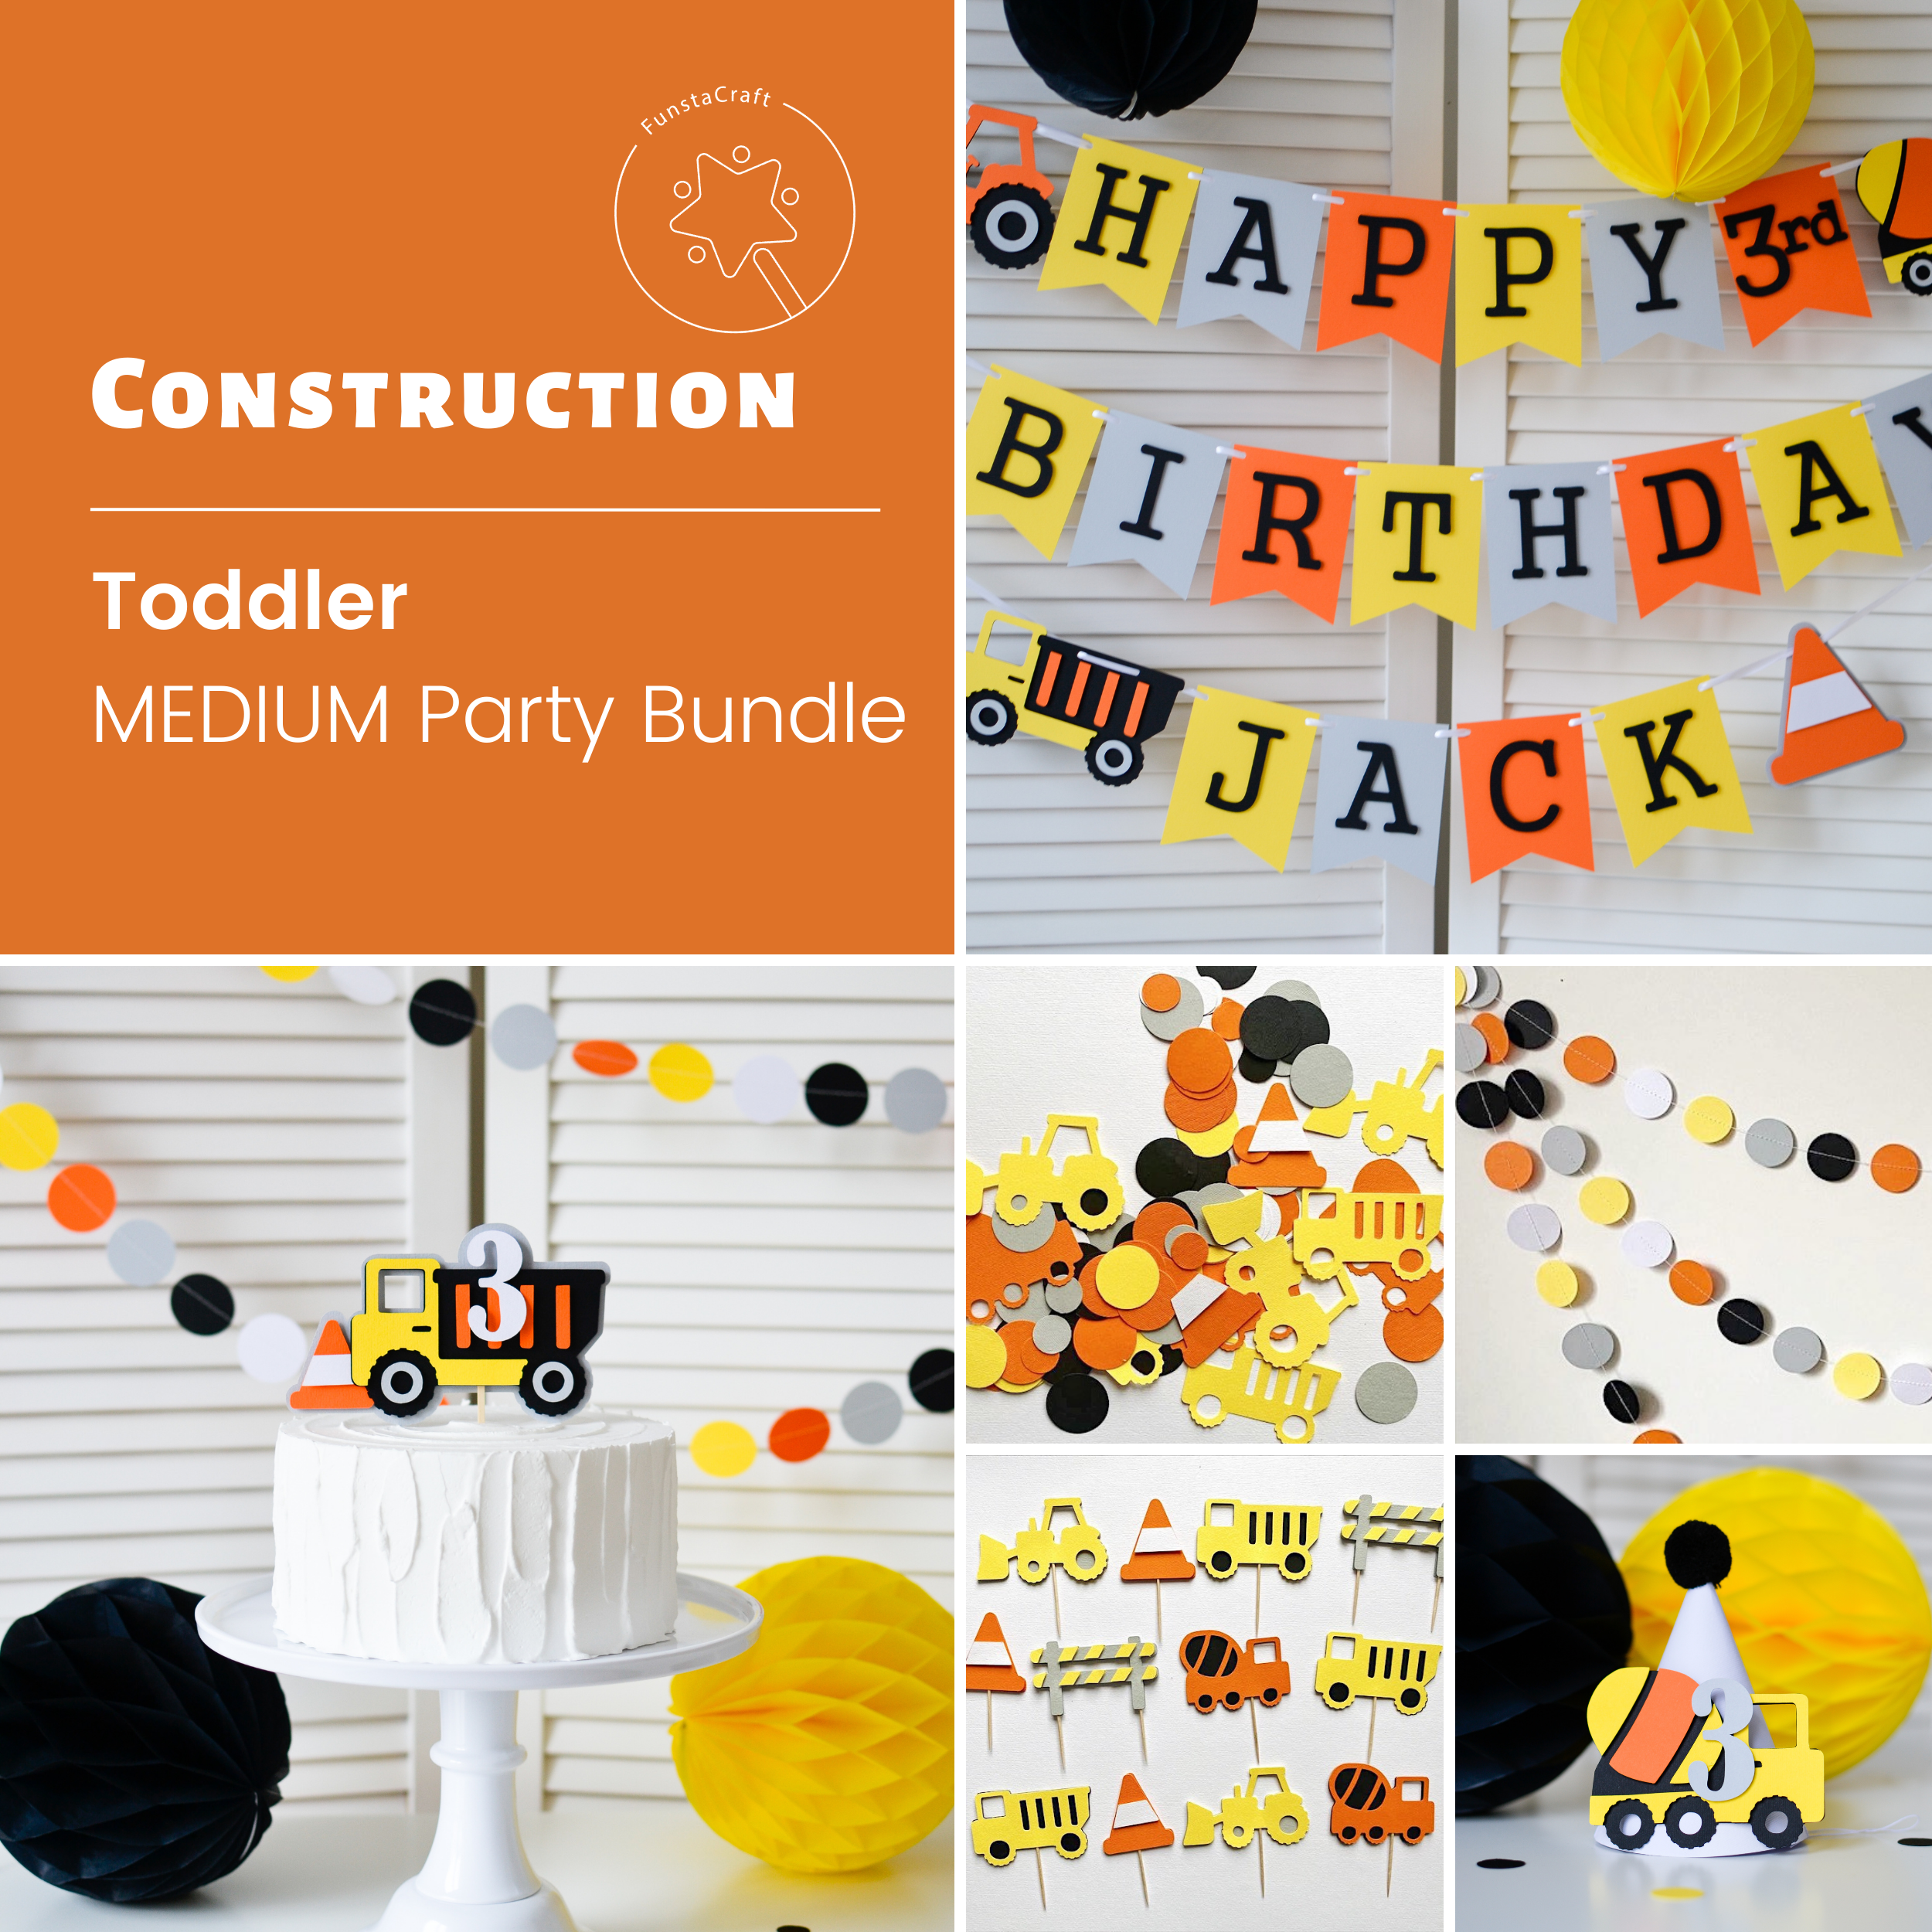 Construction Party Bundle: Build Excitement!